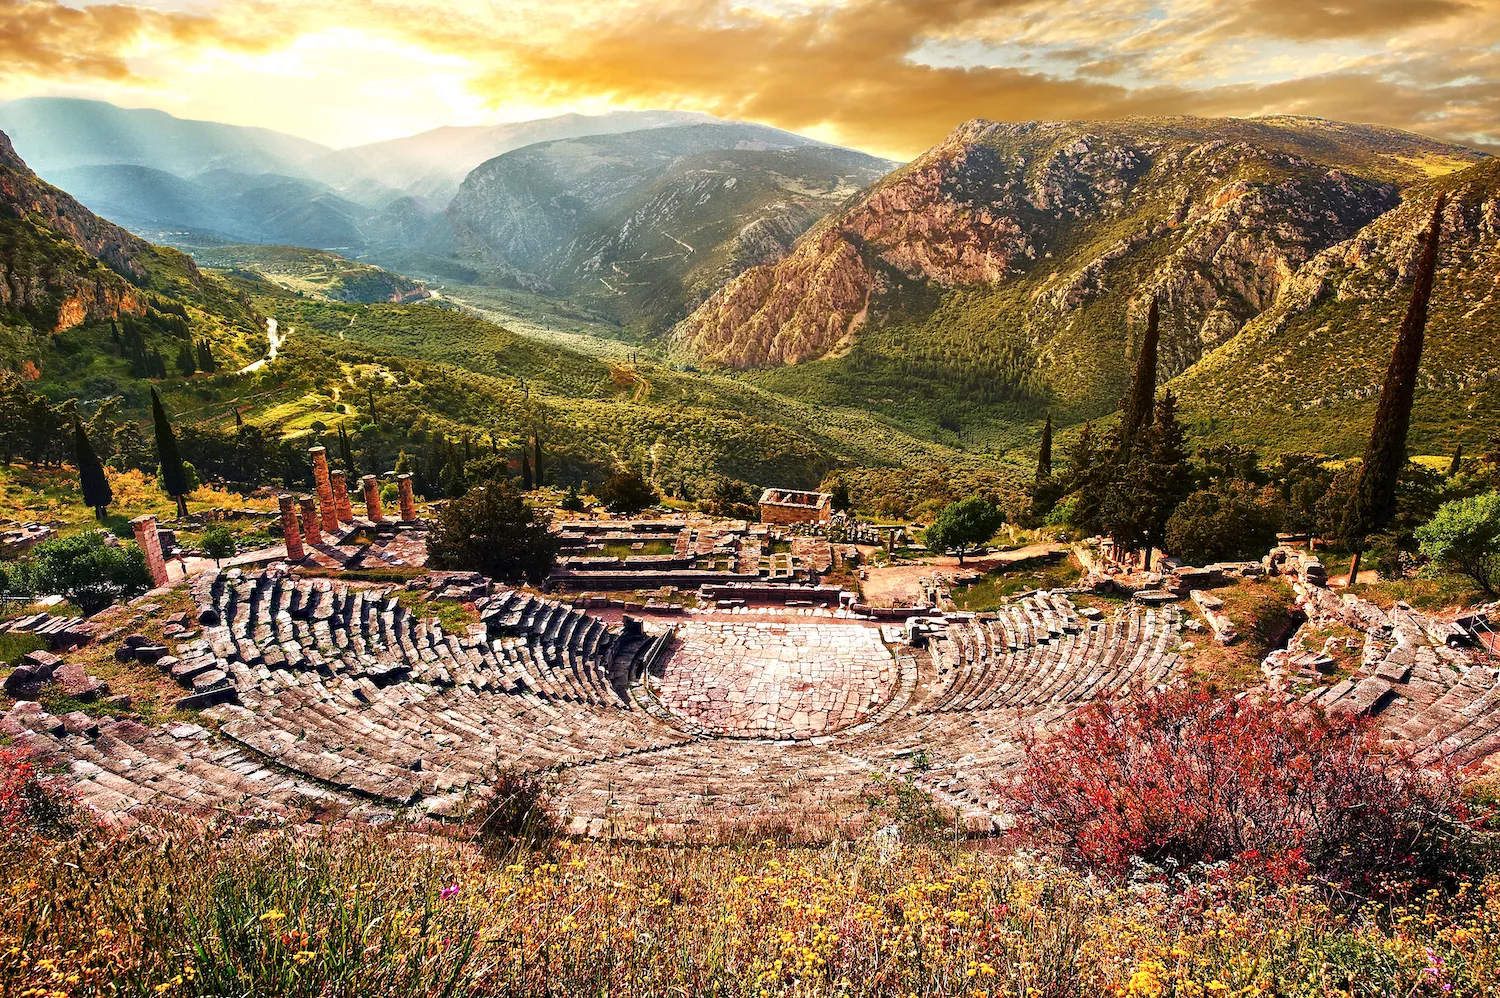 El teatre de Delfos, del segle IV aC, està construït al vessant de la muntanya, sobre el santuari d’Apol·lo, i oferia als seus 5.000 espectadors una vista espectacular